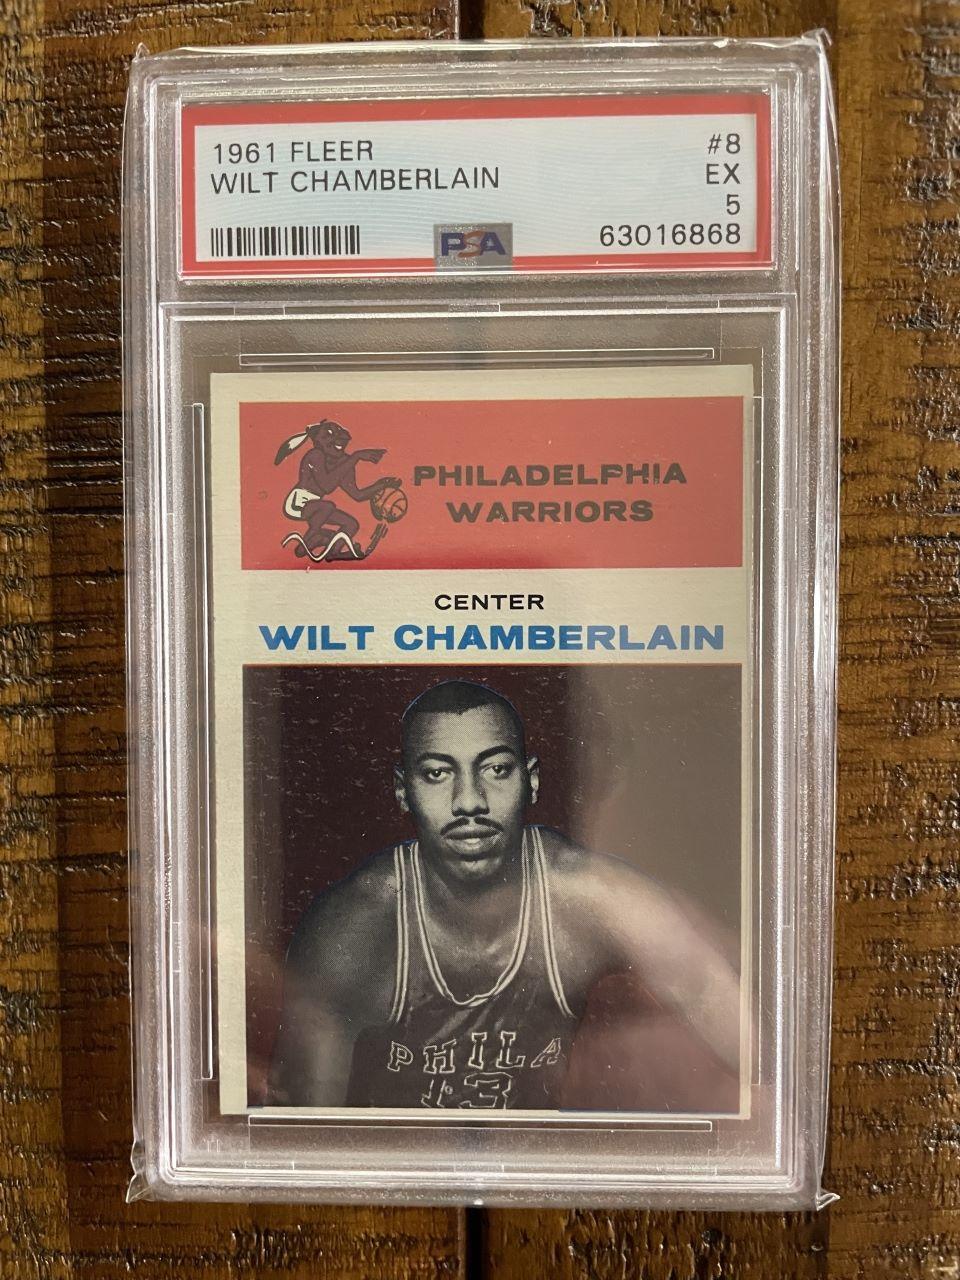 1961 Fleer NBA Wilt Chamberlain Rookie Card #8 PSA 5